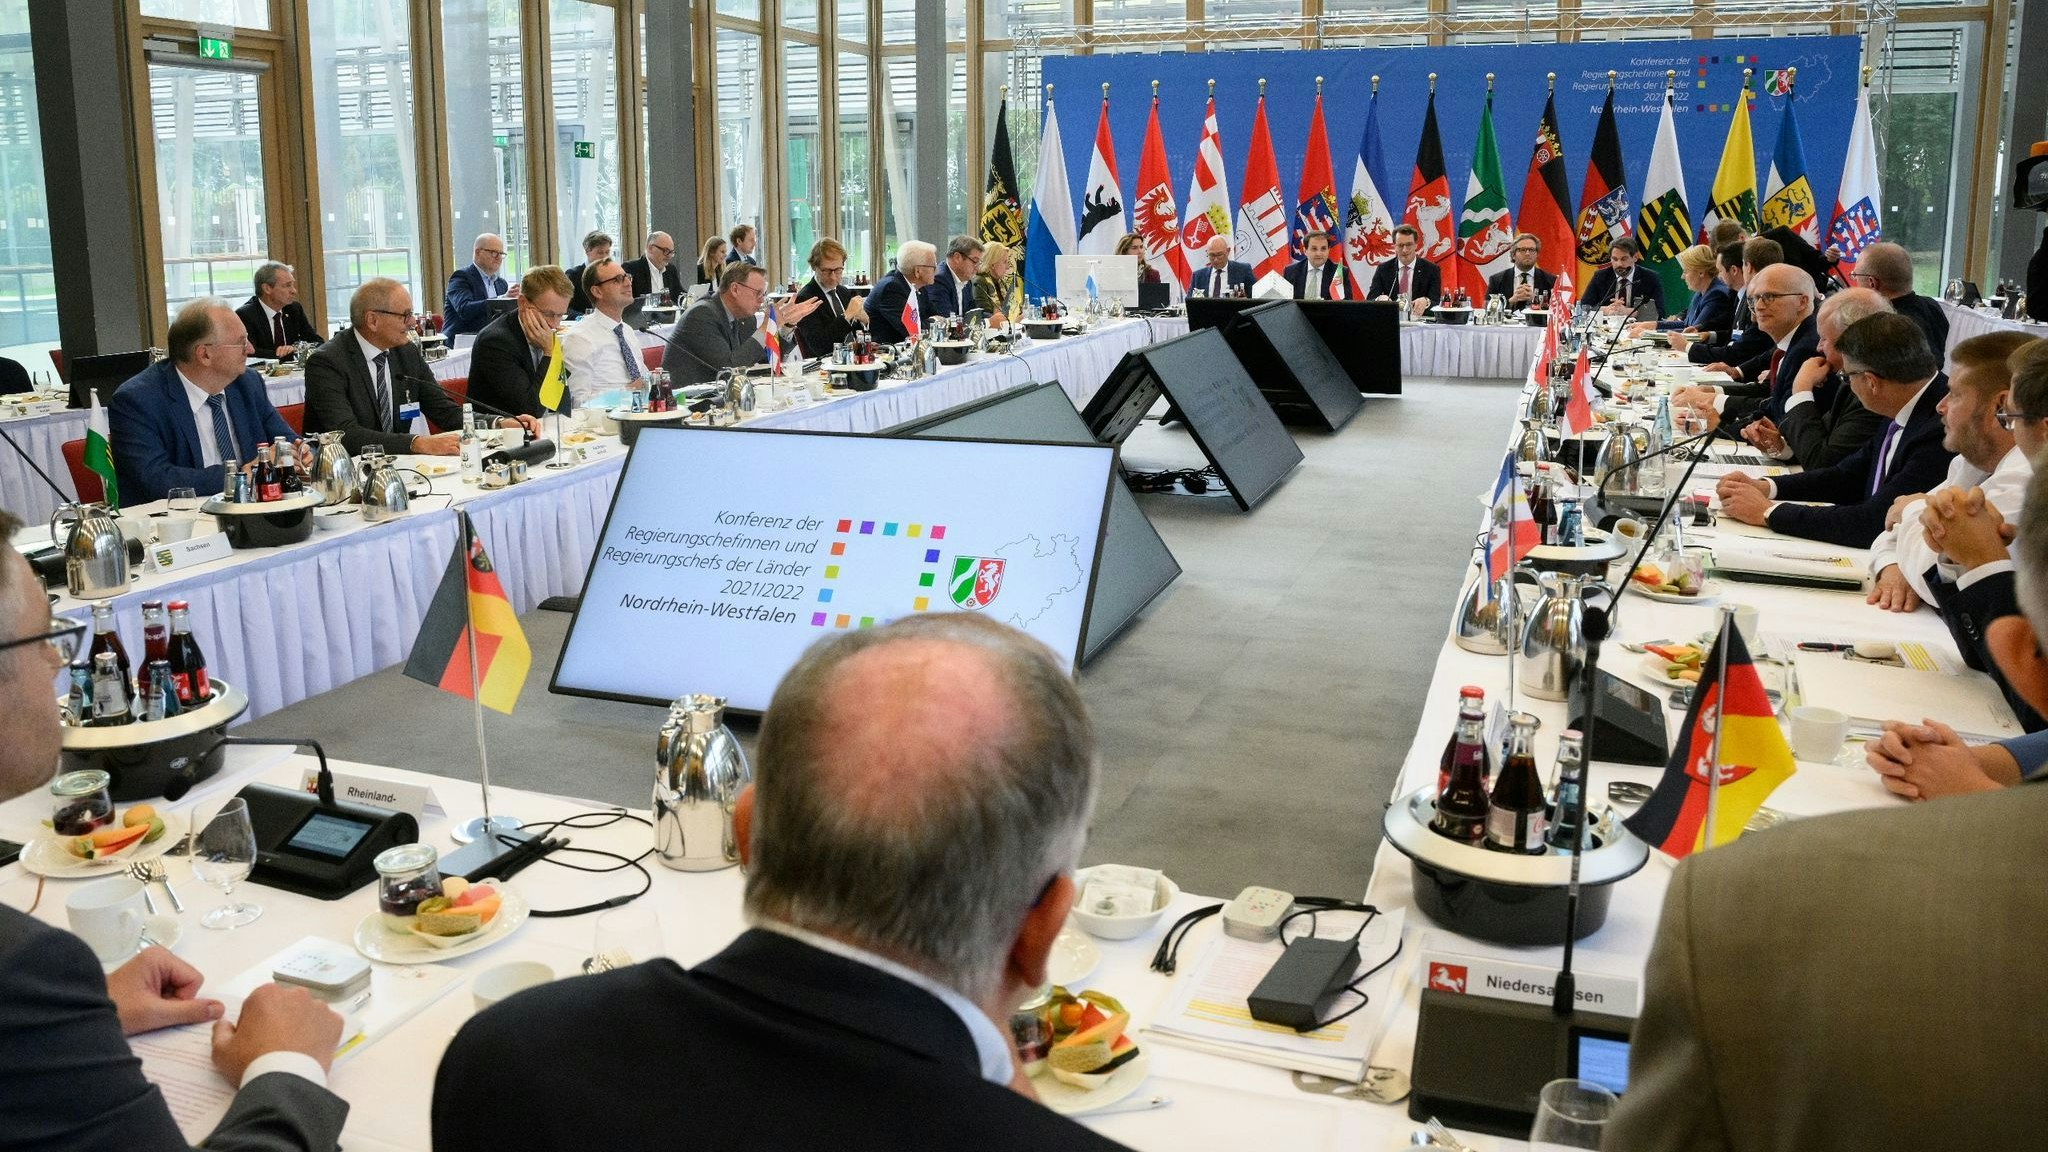 Die Regierungschefs der Länder treffen sich zur Ministerpräsidentenkonferenz (MPK) in der NRW-Landesvertretung. Foto: dpa/von Jutrczenka